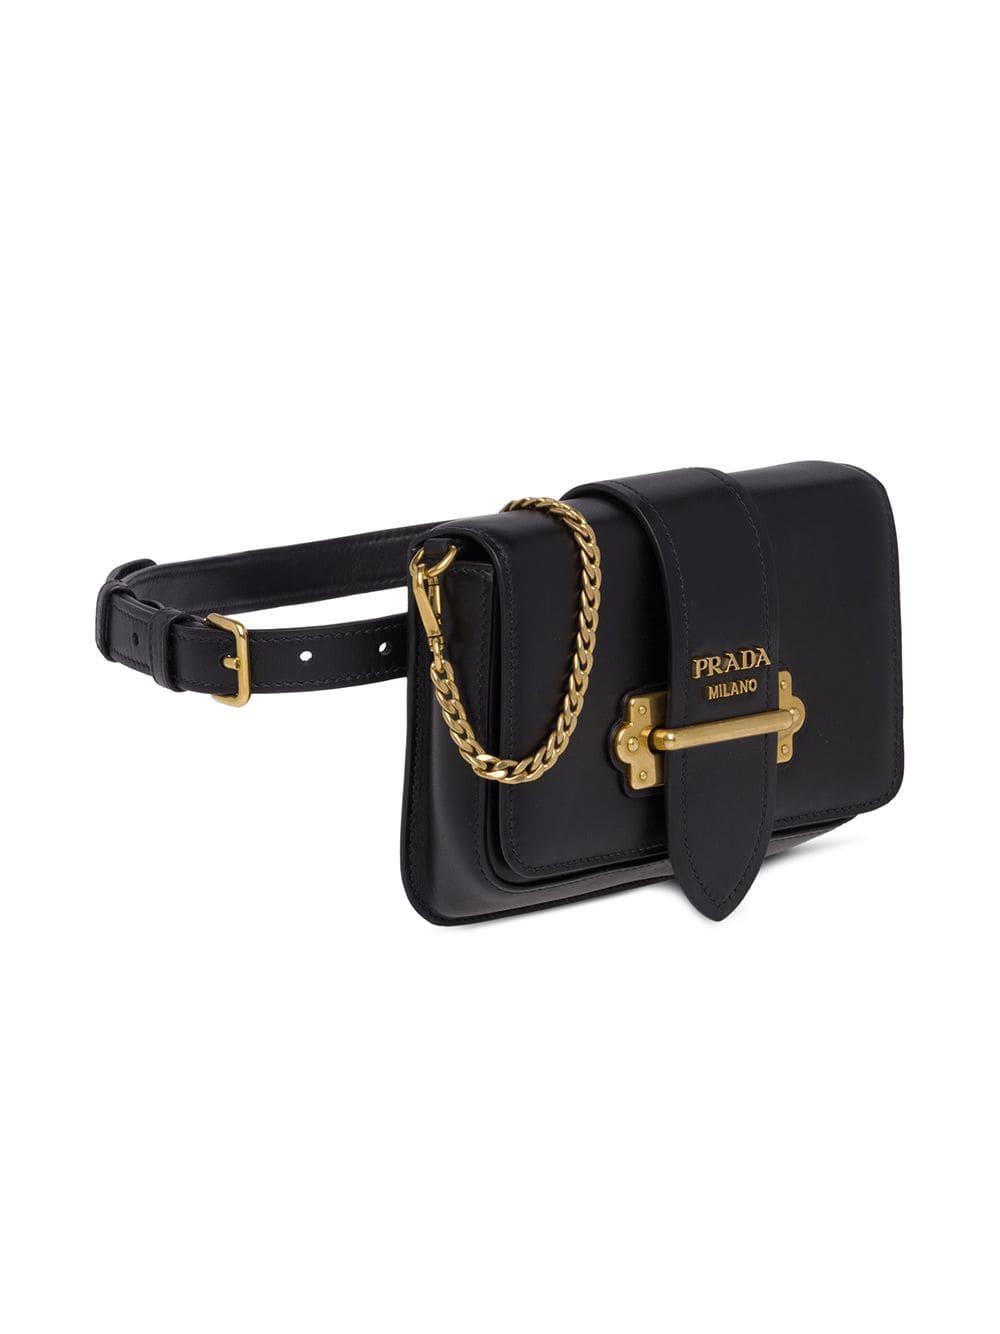 Prada Black Cahier Leather Shoulder Bag - Farfetch